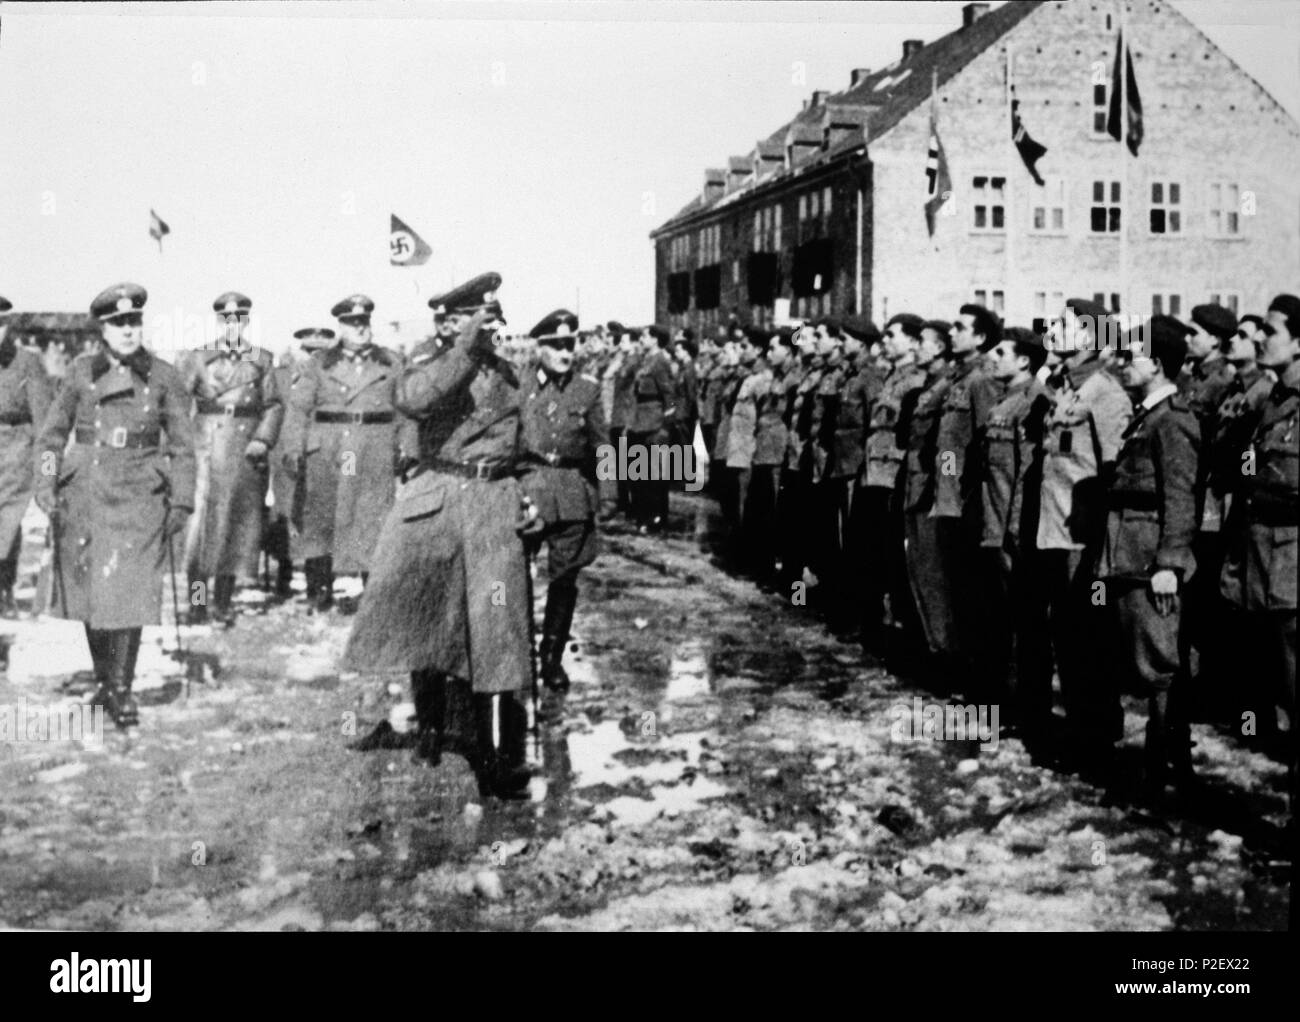 Revista por los mandos alemanes de la División Azul en Konigsberg. Alemania, año 1941. Stock Photo